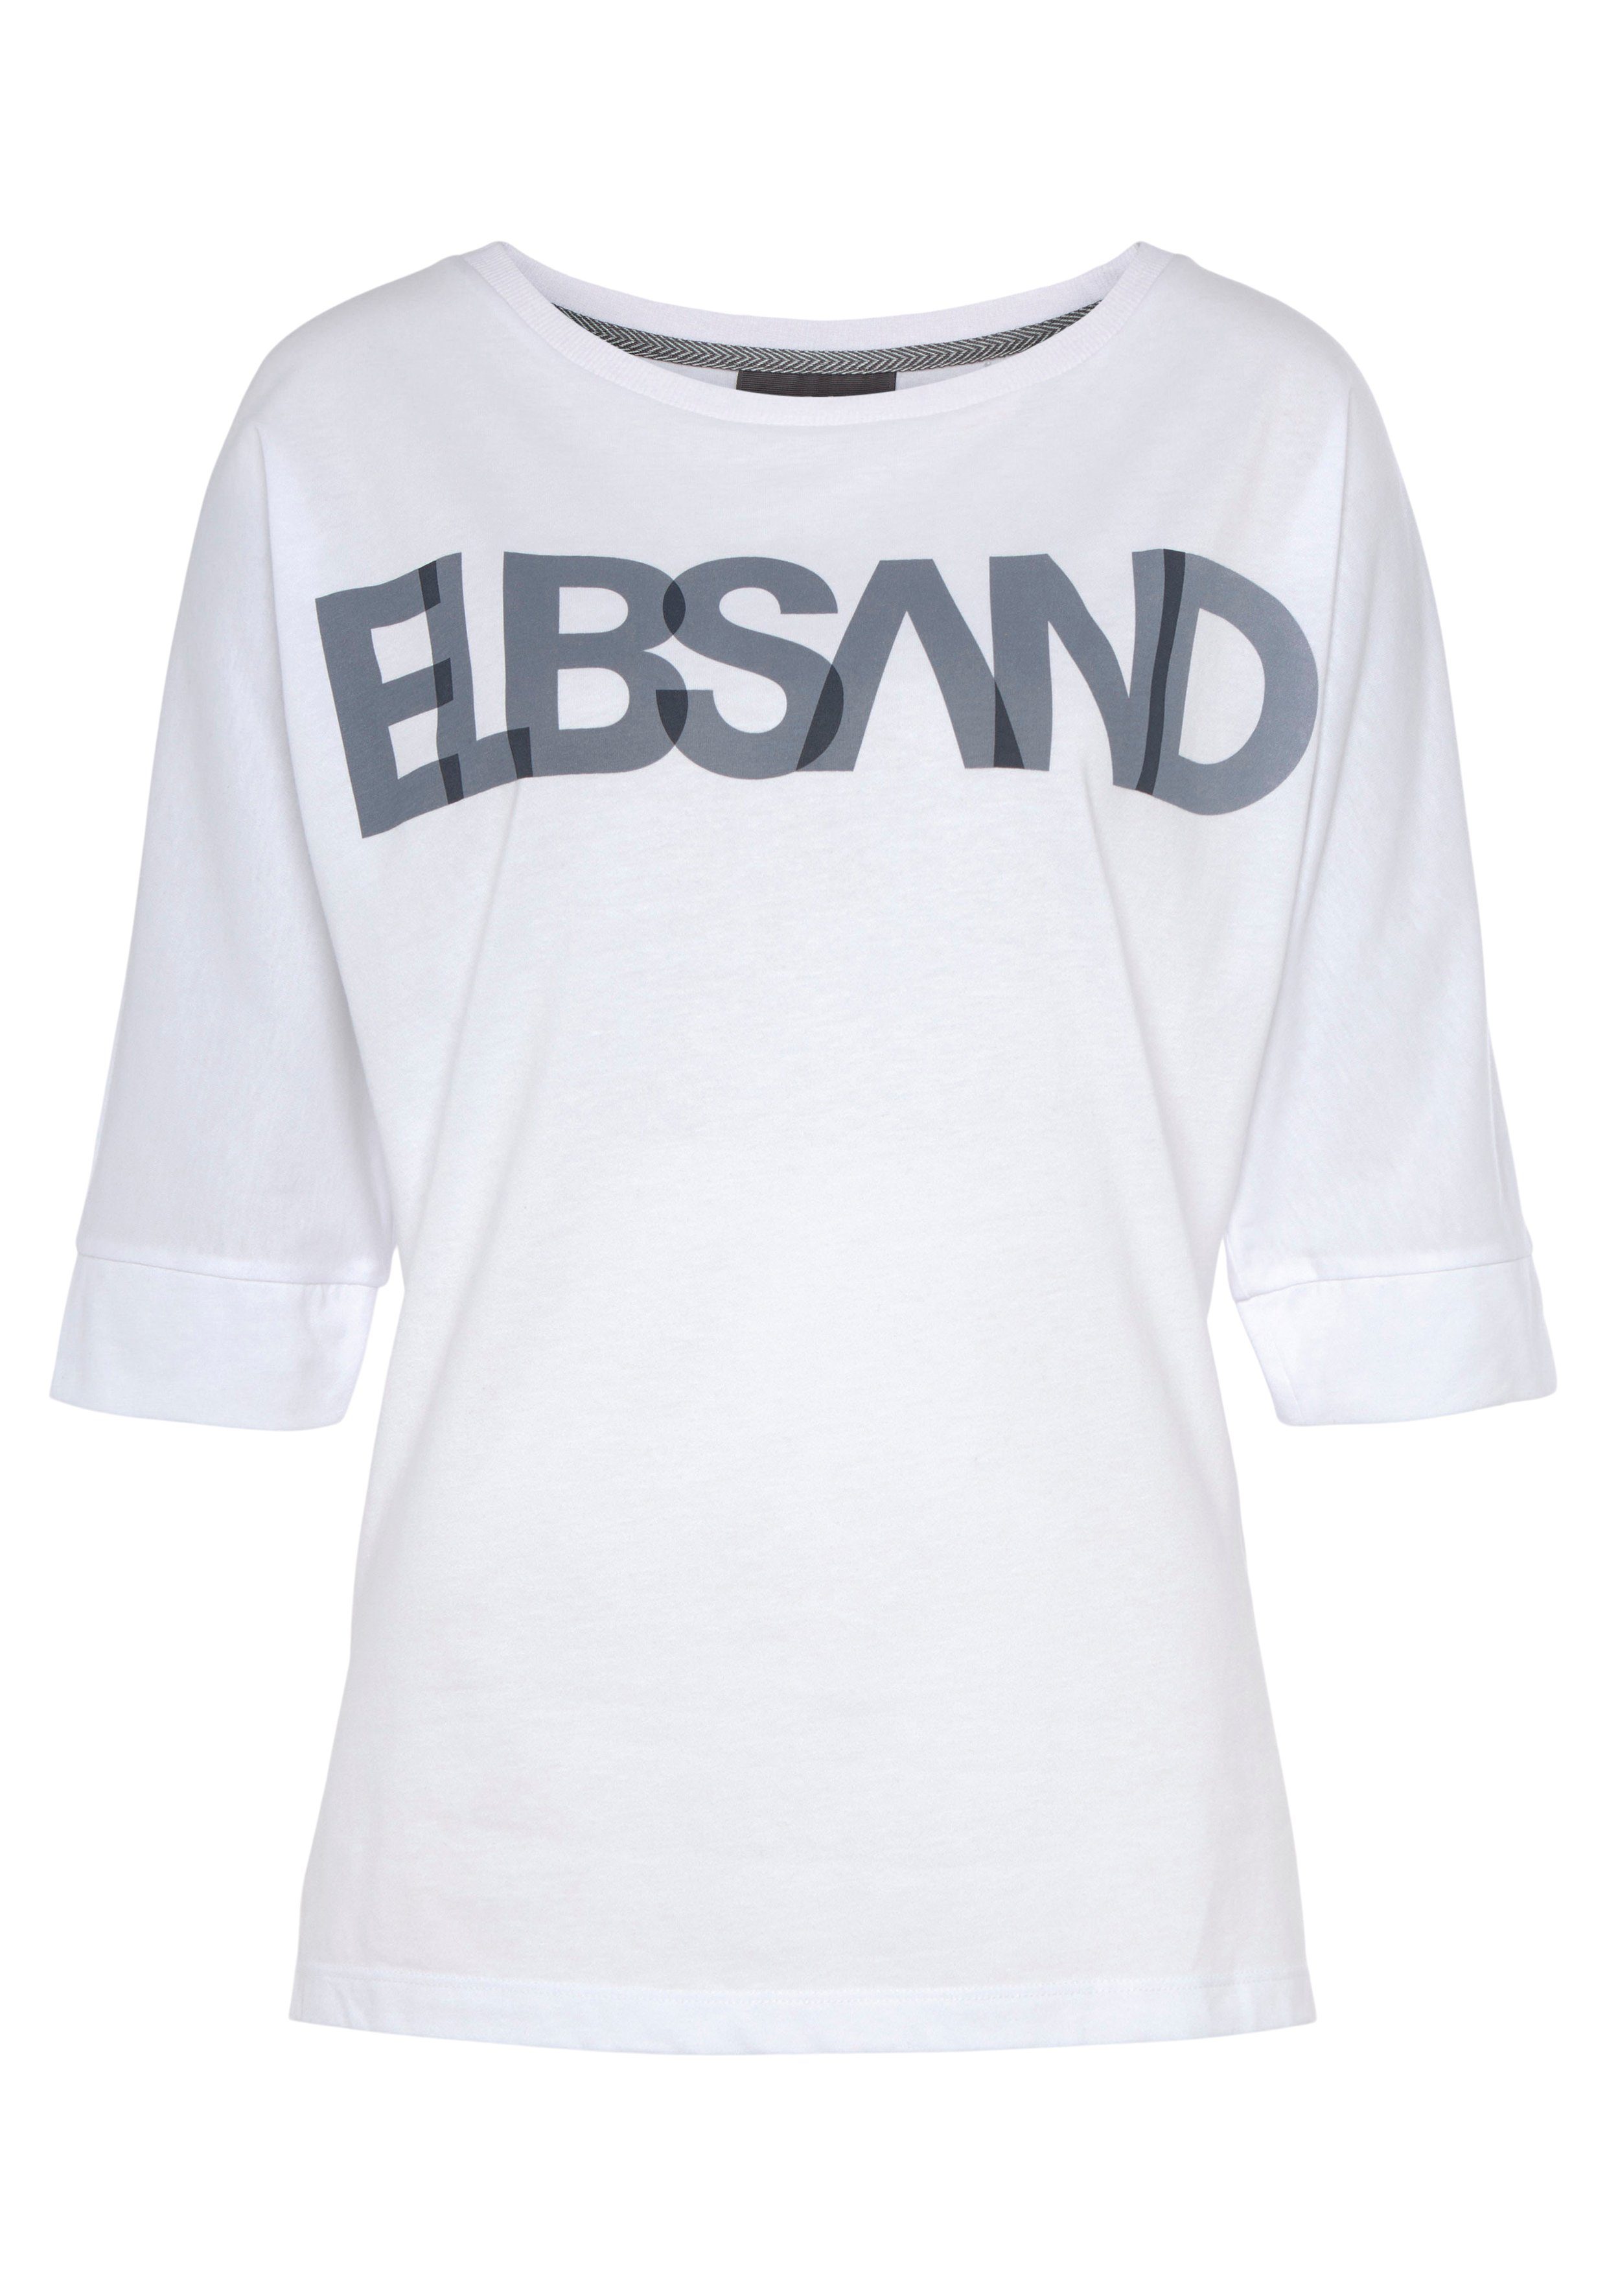 Elbsand 3/4-Arm-Shirt Logodruck, Passform lockere Baumwoll-Mix, mit